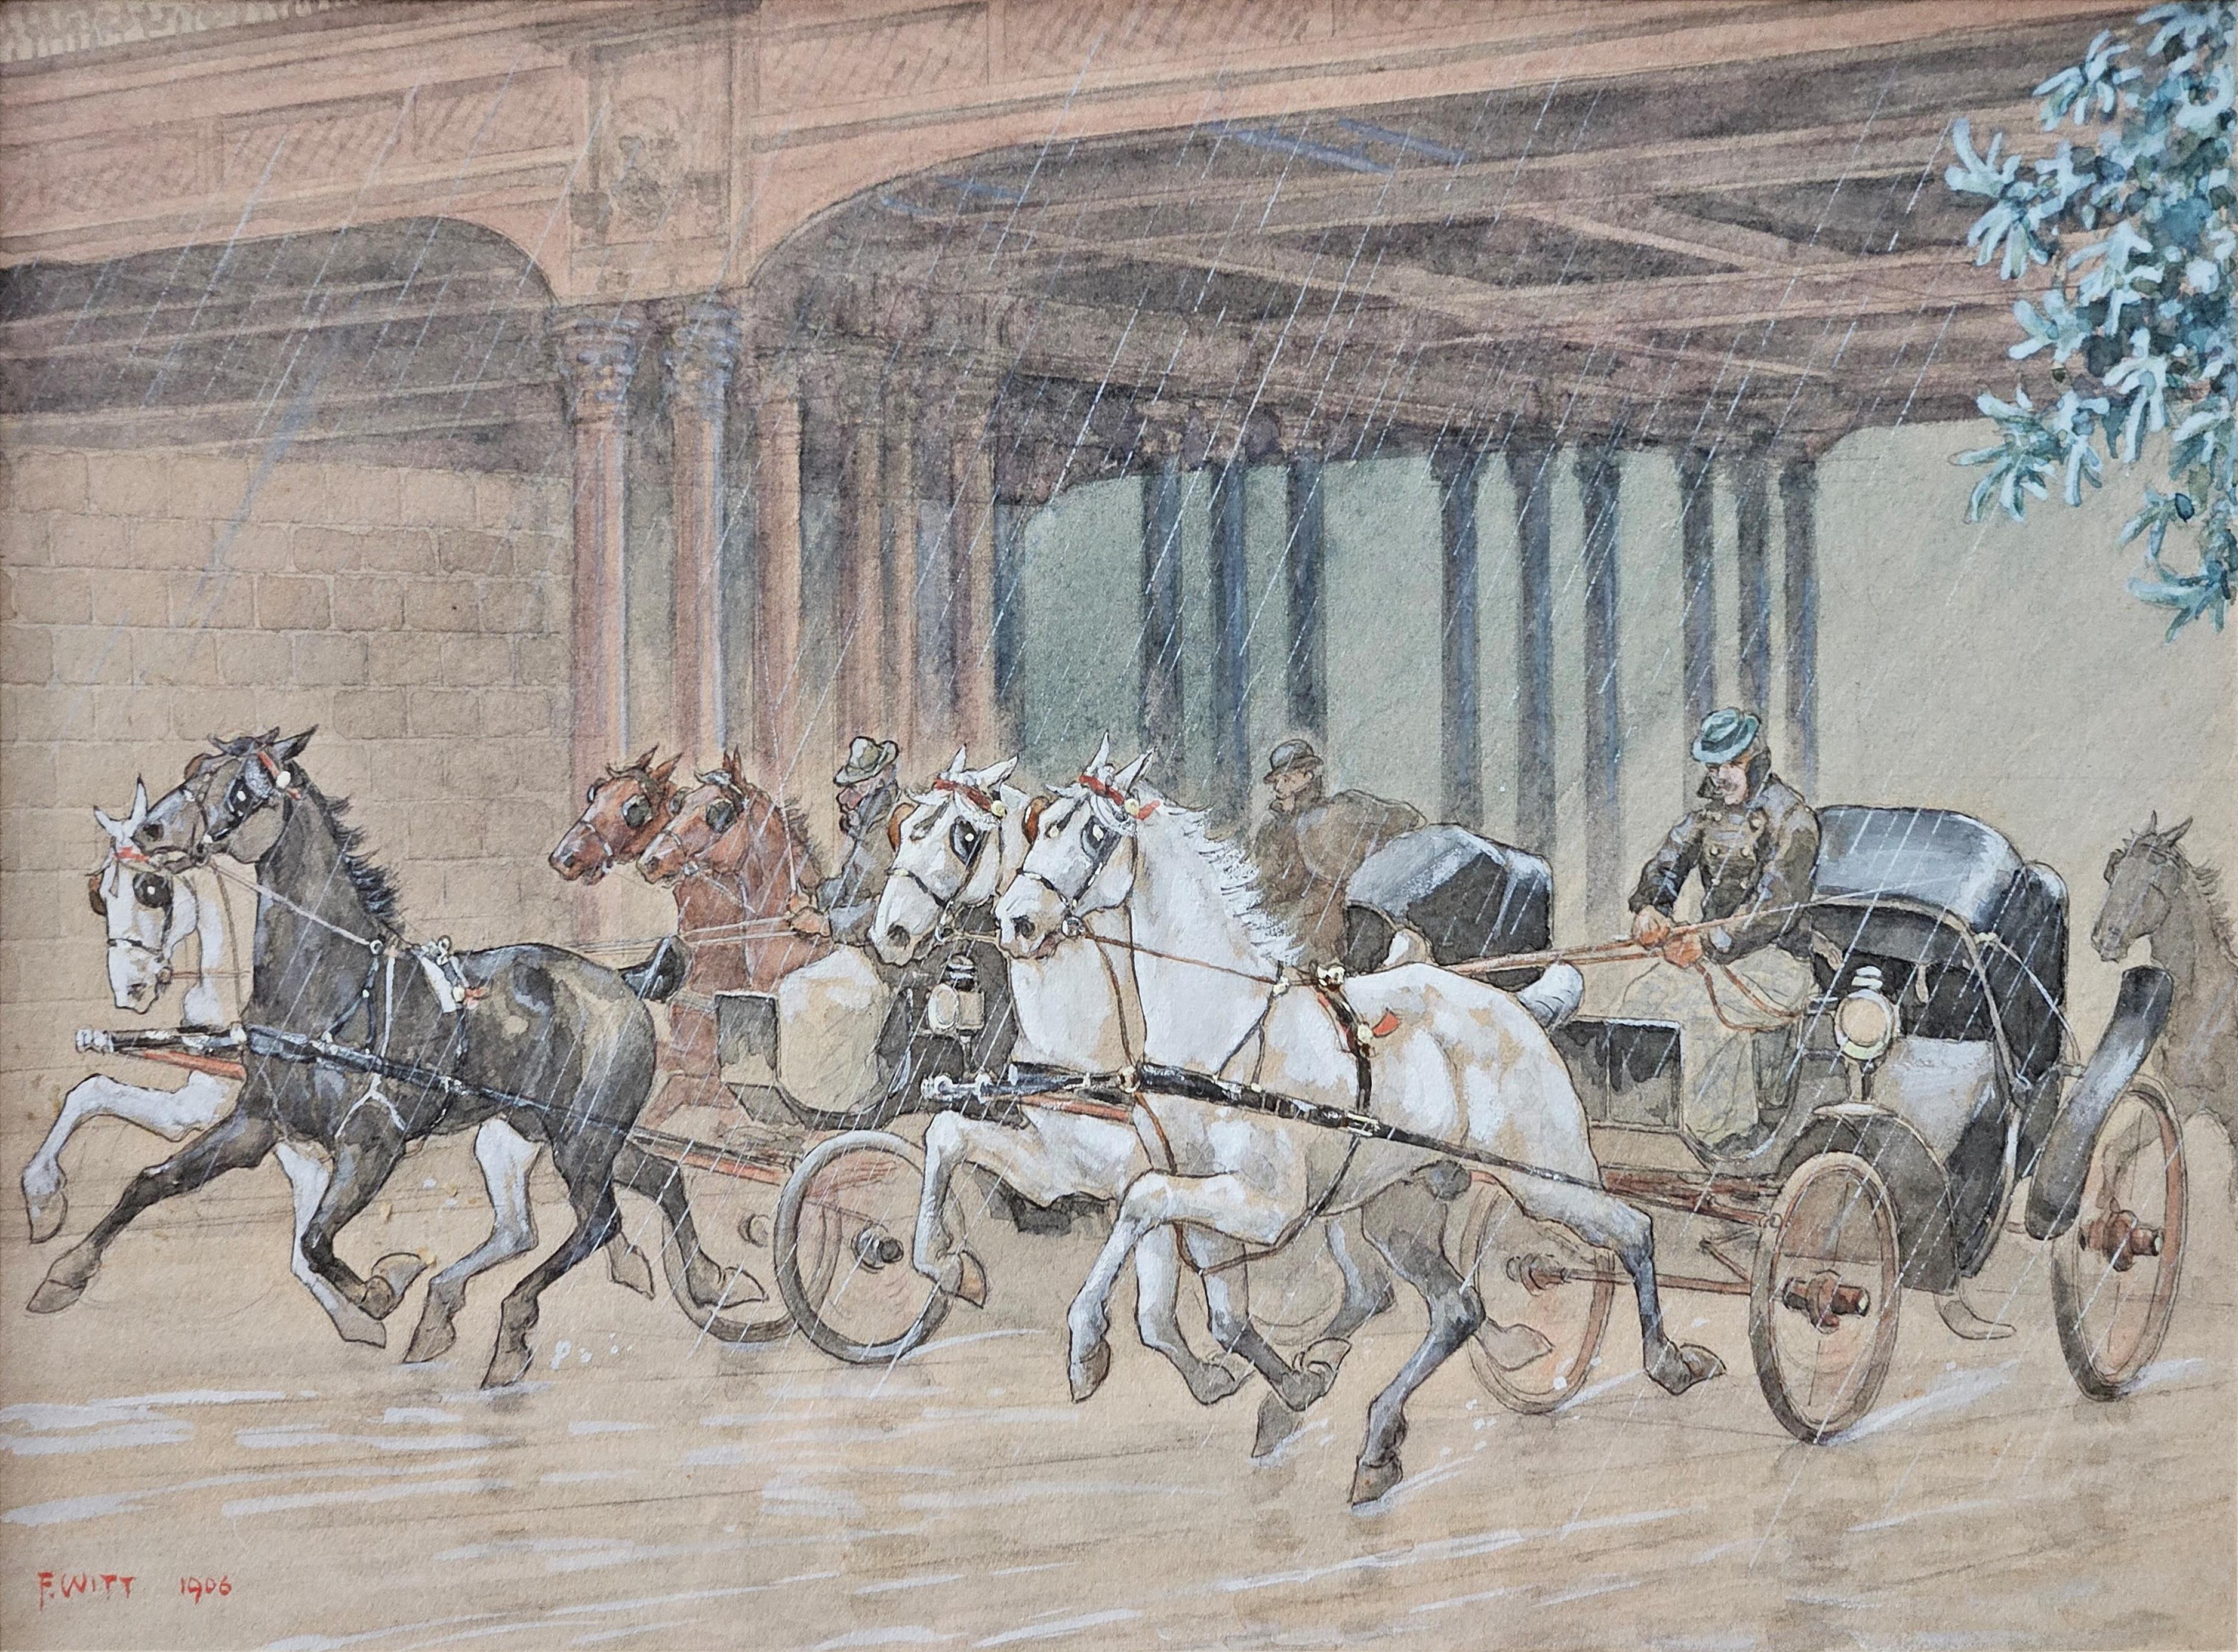 Courses de cariage à deux chevaux et à un cheval, signées Franz Witt (Schloß Mähren 1864 - ?).
Crayon, aquarelle, blanc opaque sur carton.
28 cm x 18 cm